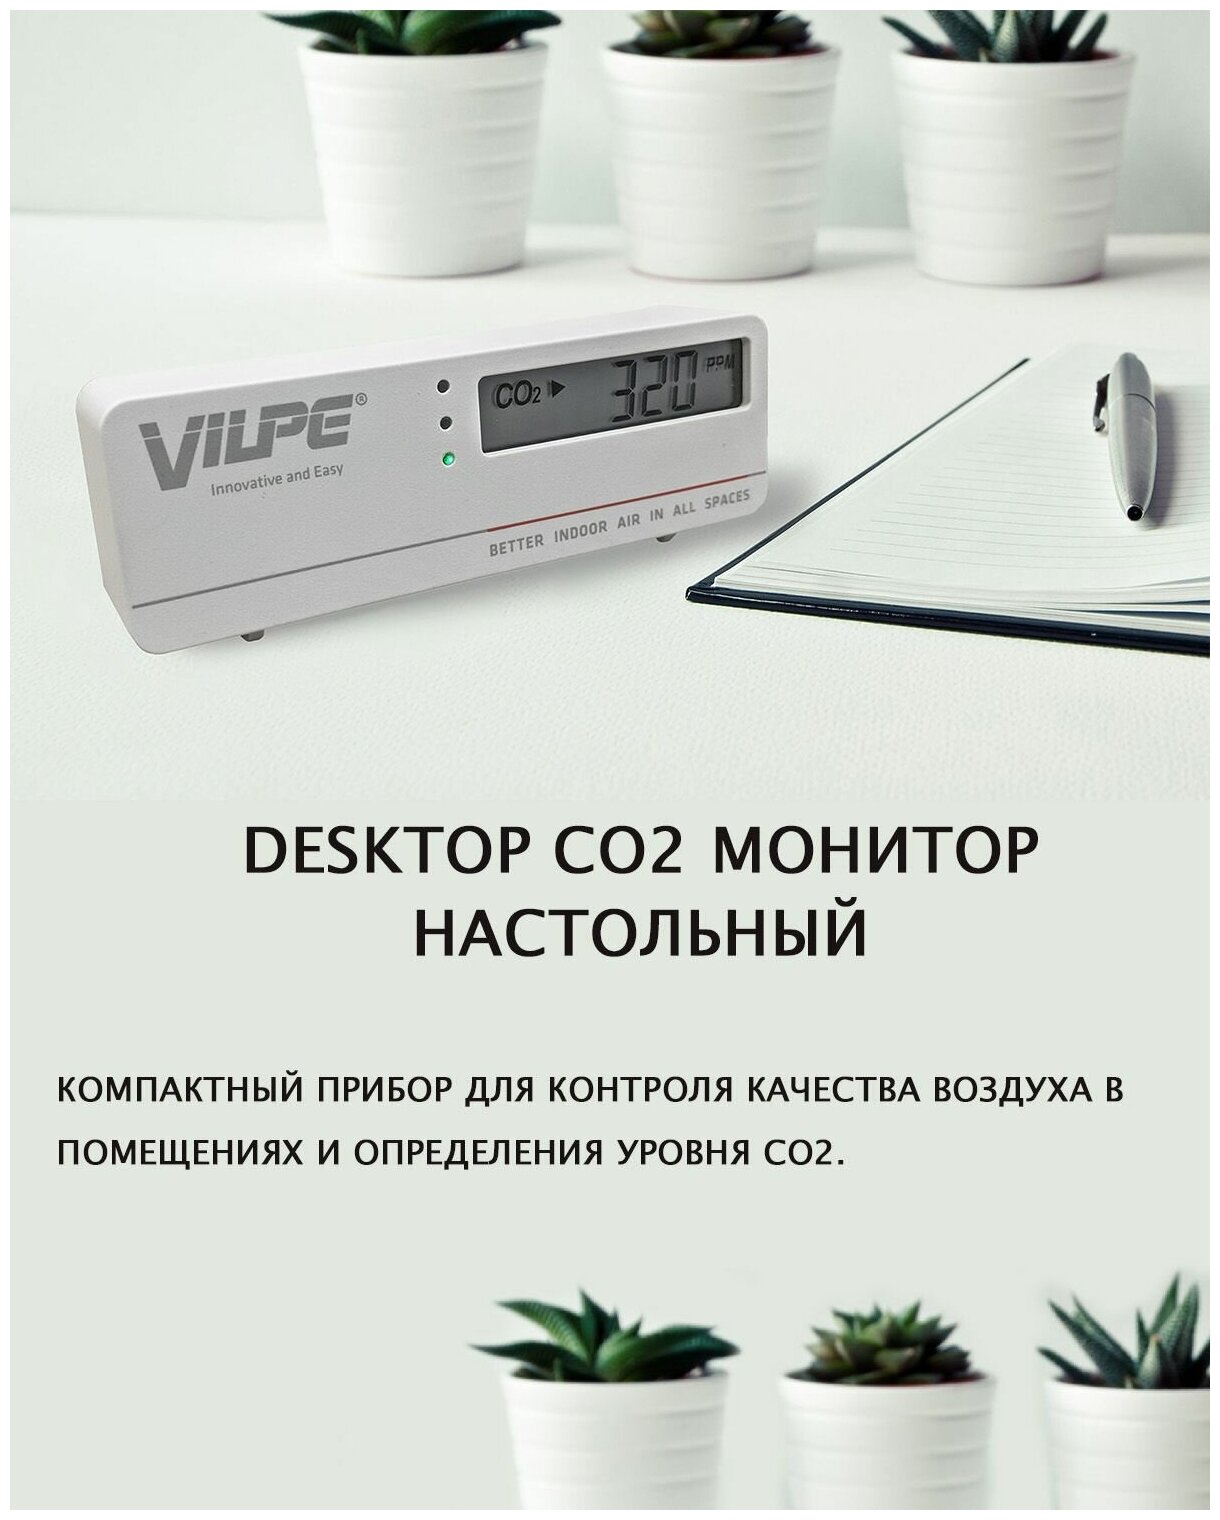 Монитор качества воздуха DESKTOP CO2 настольный датчик углекислого газа термометр электронный VILPE шт.